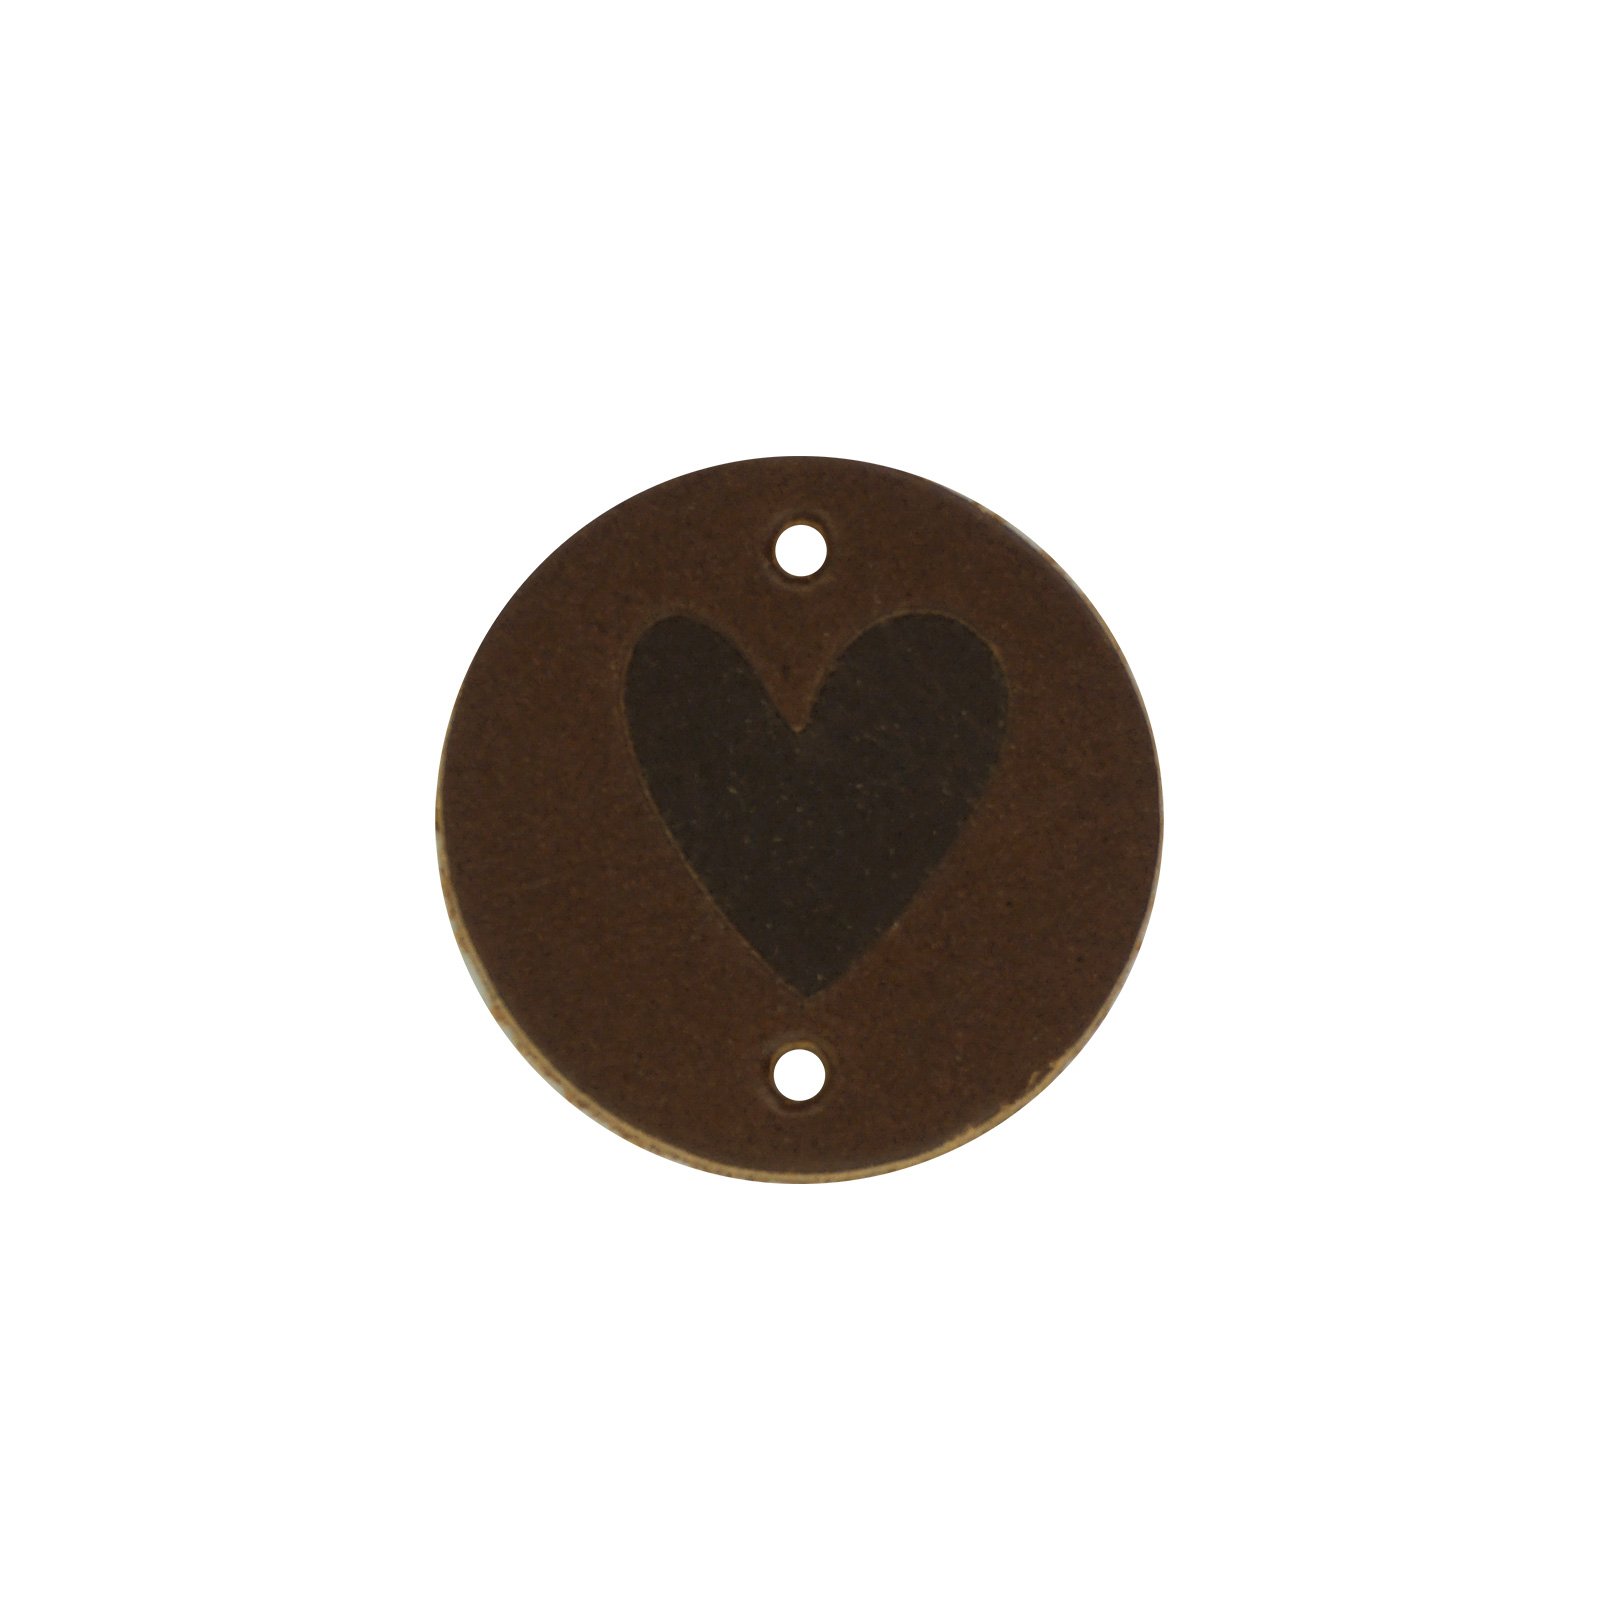 Leren label Round Hart 30mm kleur 975 bruin / donker bruin